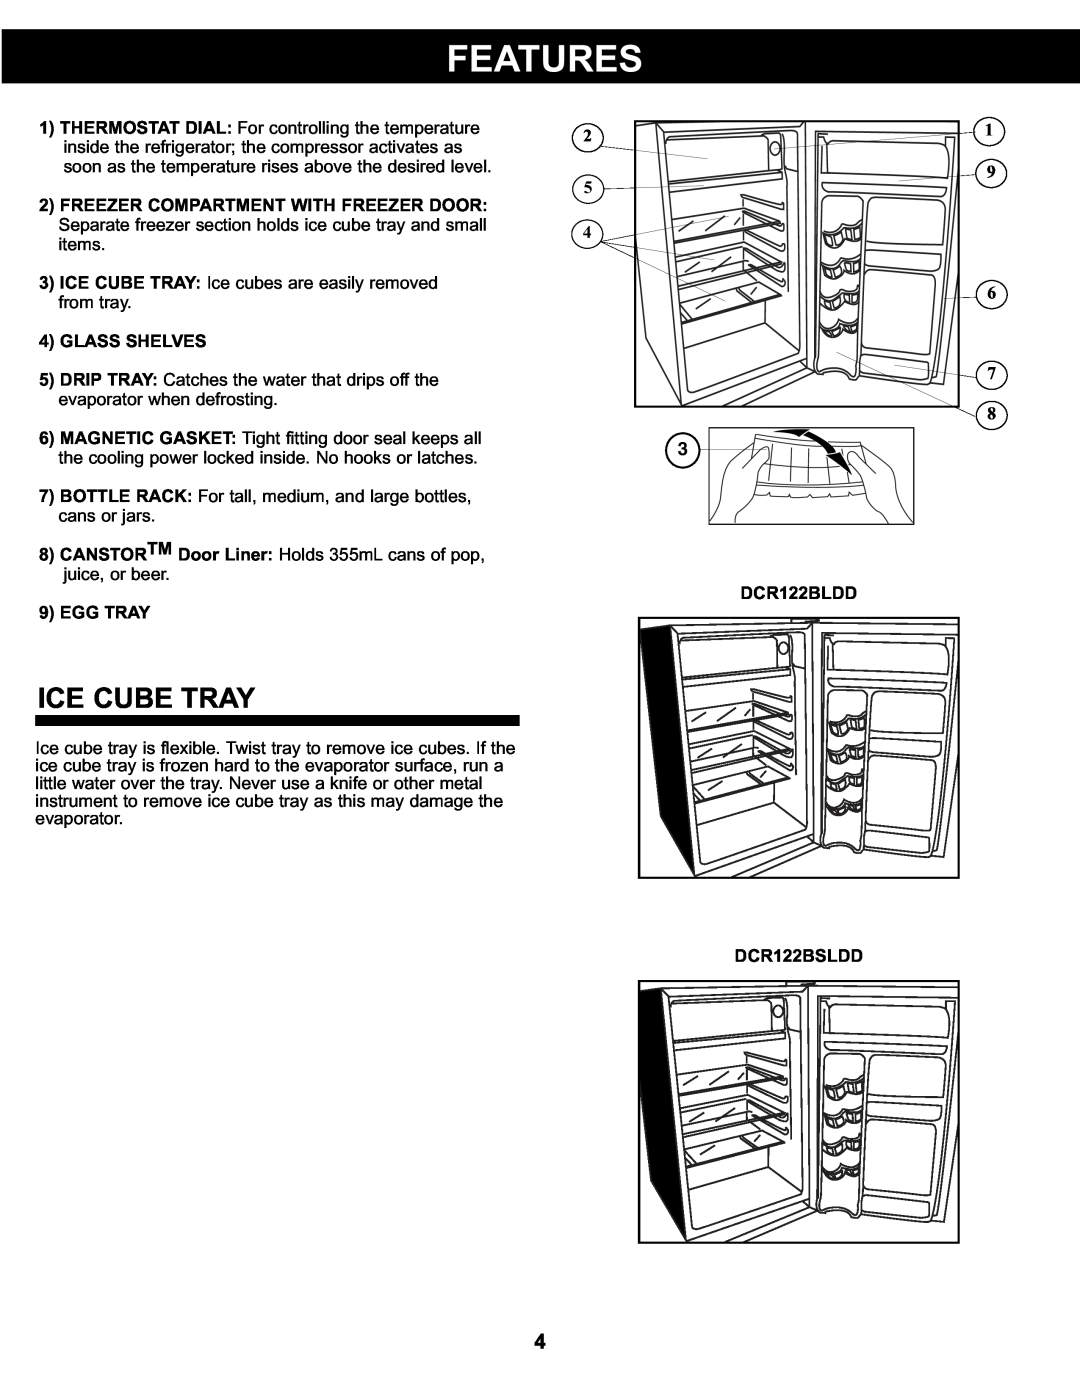 Danby DCR122WDD manual Features, Ice Cube Tray, Glass Shelves, Egg Tray, DCR122BLDD, DCR122BSLDD 